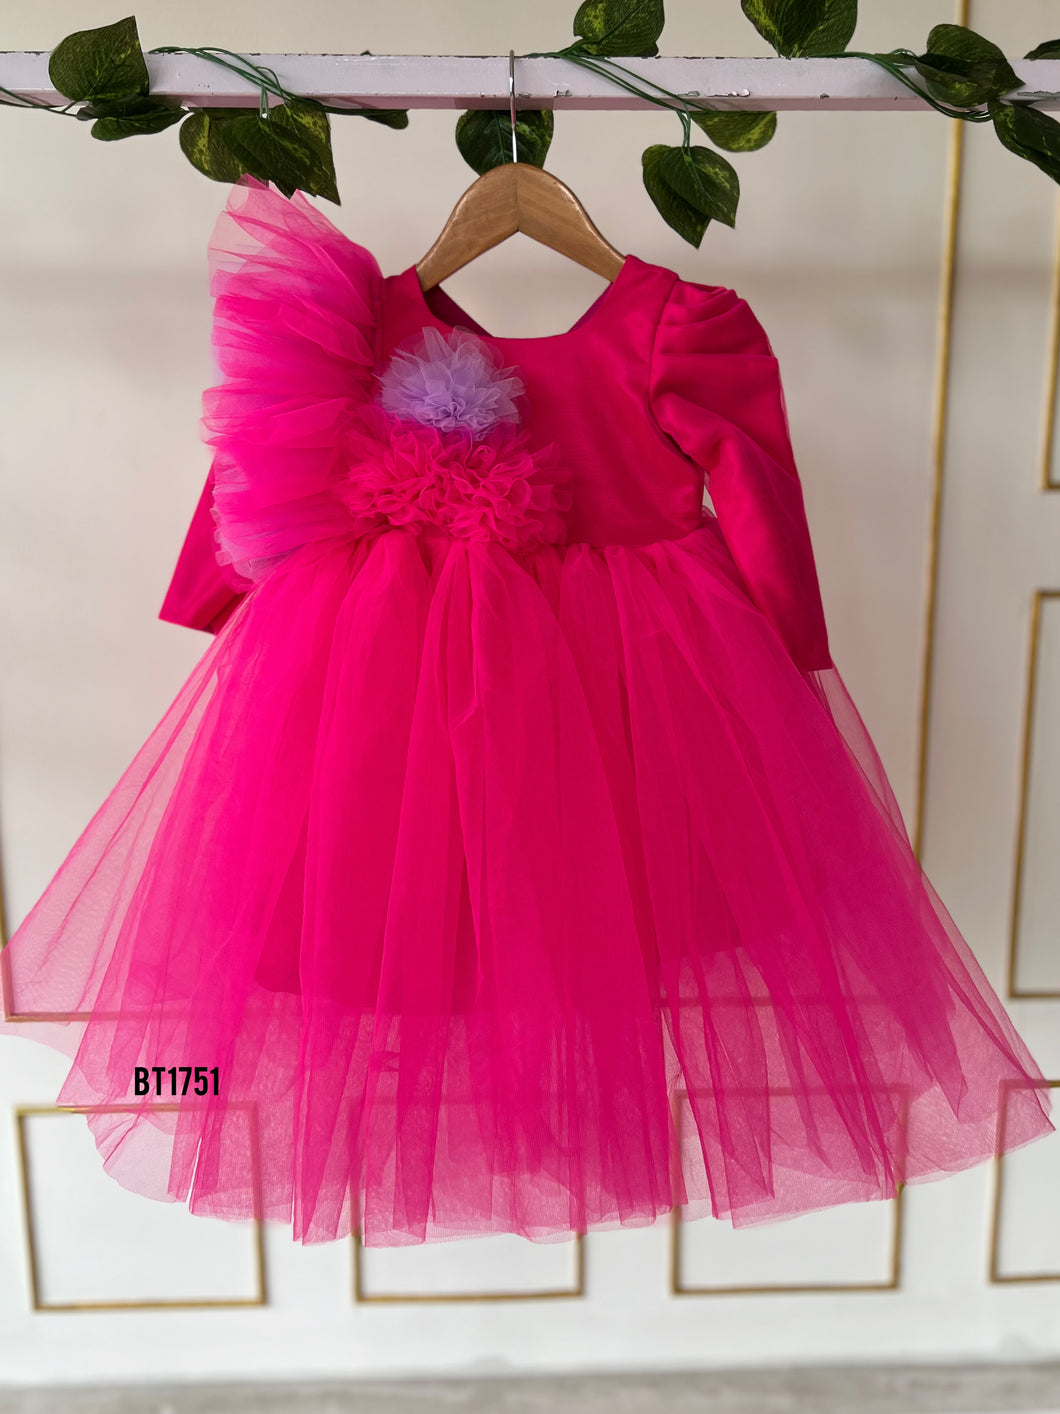 BT1751 Bright Blossom Celebration Dress for Tiny Dames